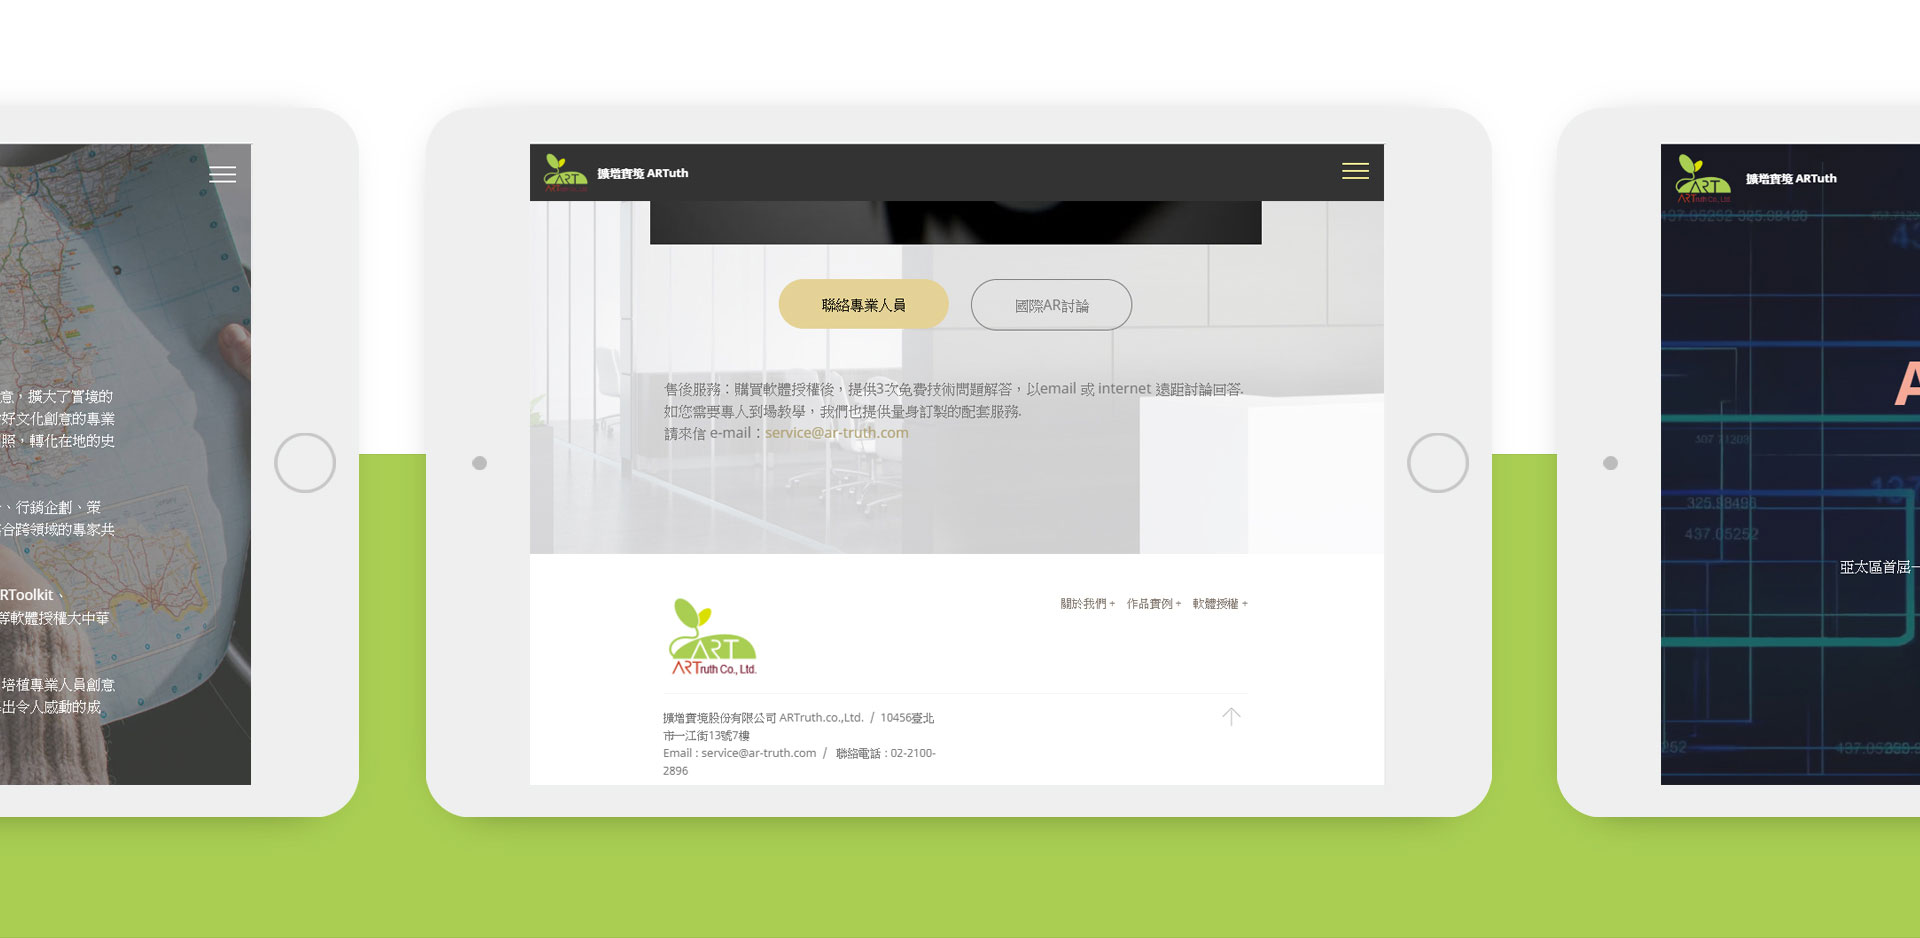 公司企業產品服務內容網頁規劃設計